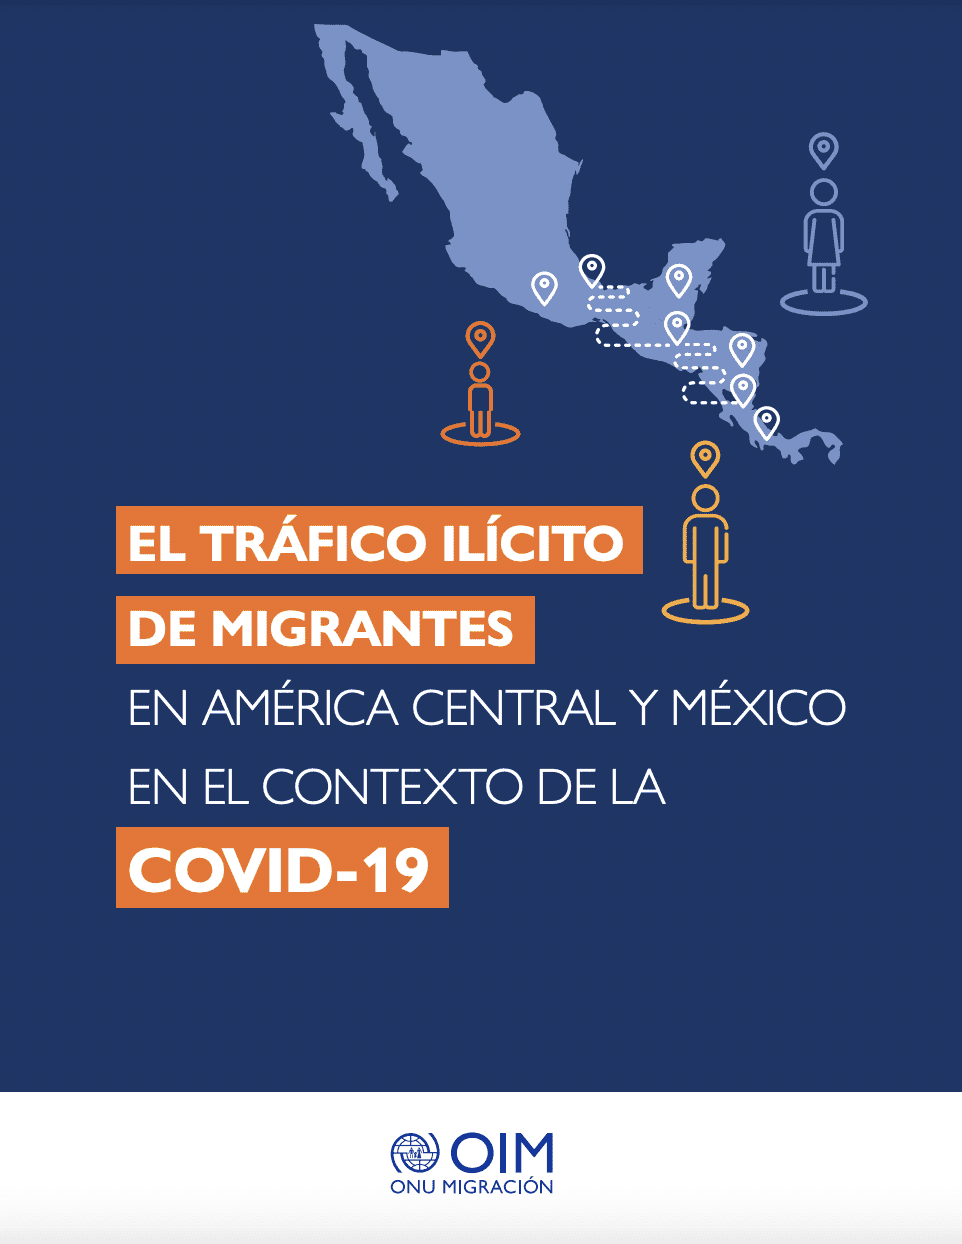 El Tráfico Ilícito de Migrantes en América Central y México en el Contexto de la COVID-19